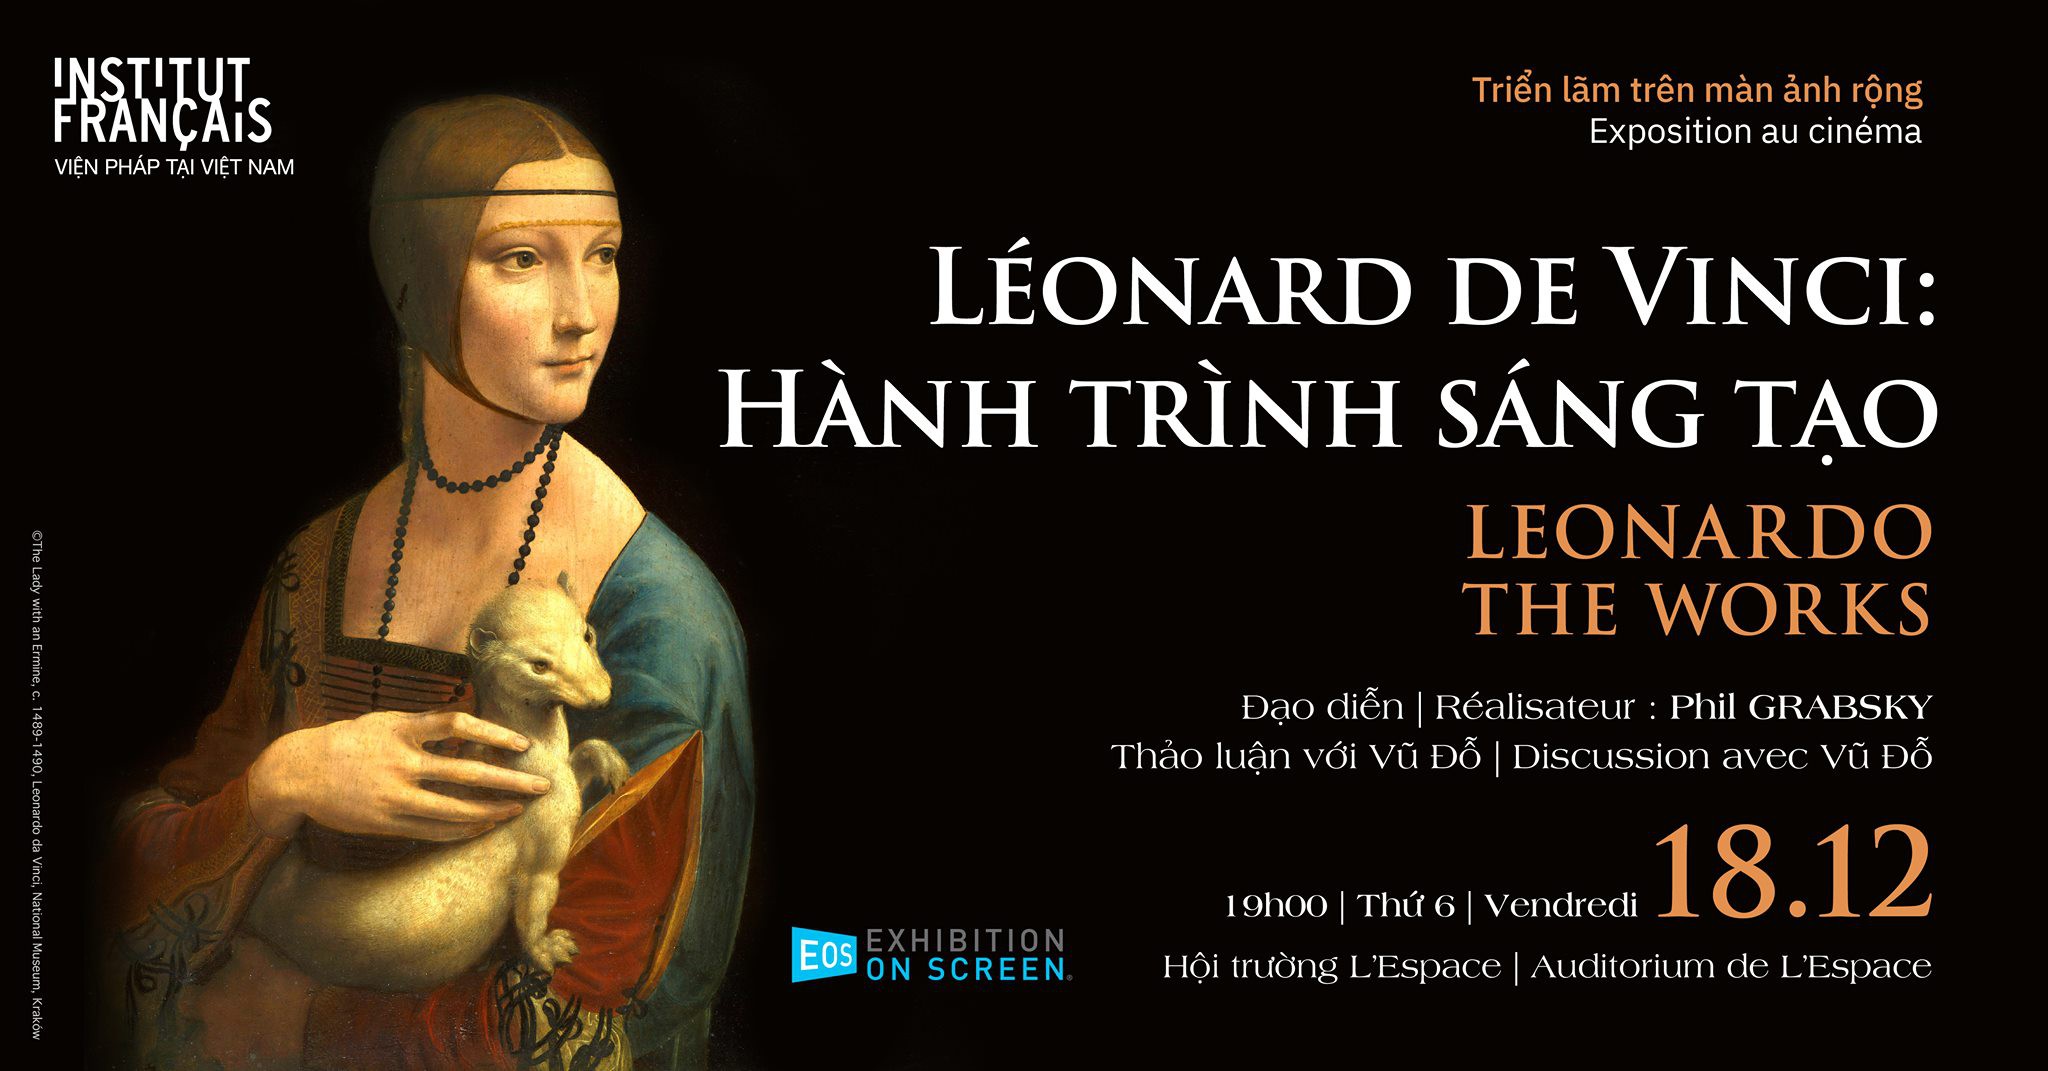 Triển lãm trên màn ảnh rộng Léonard De Vinci Hành trình sáng tạo